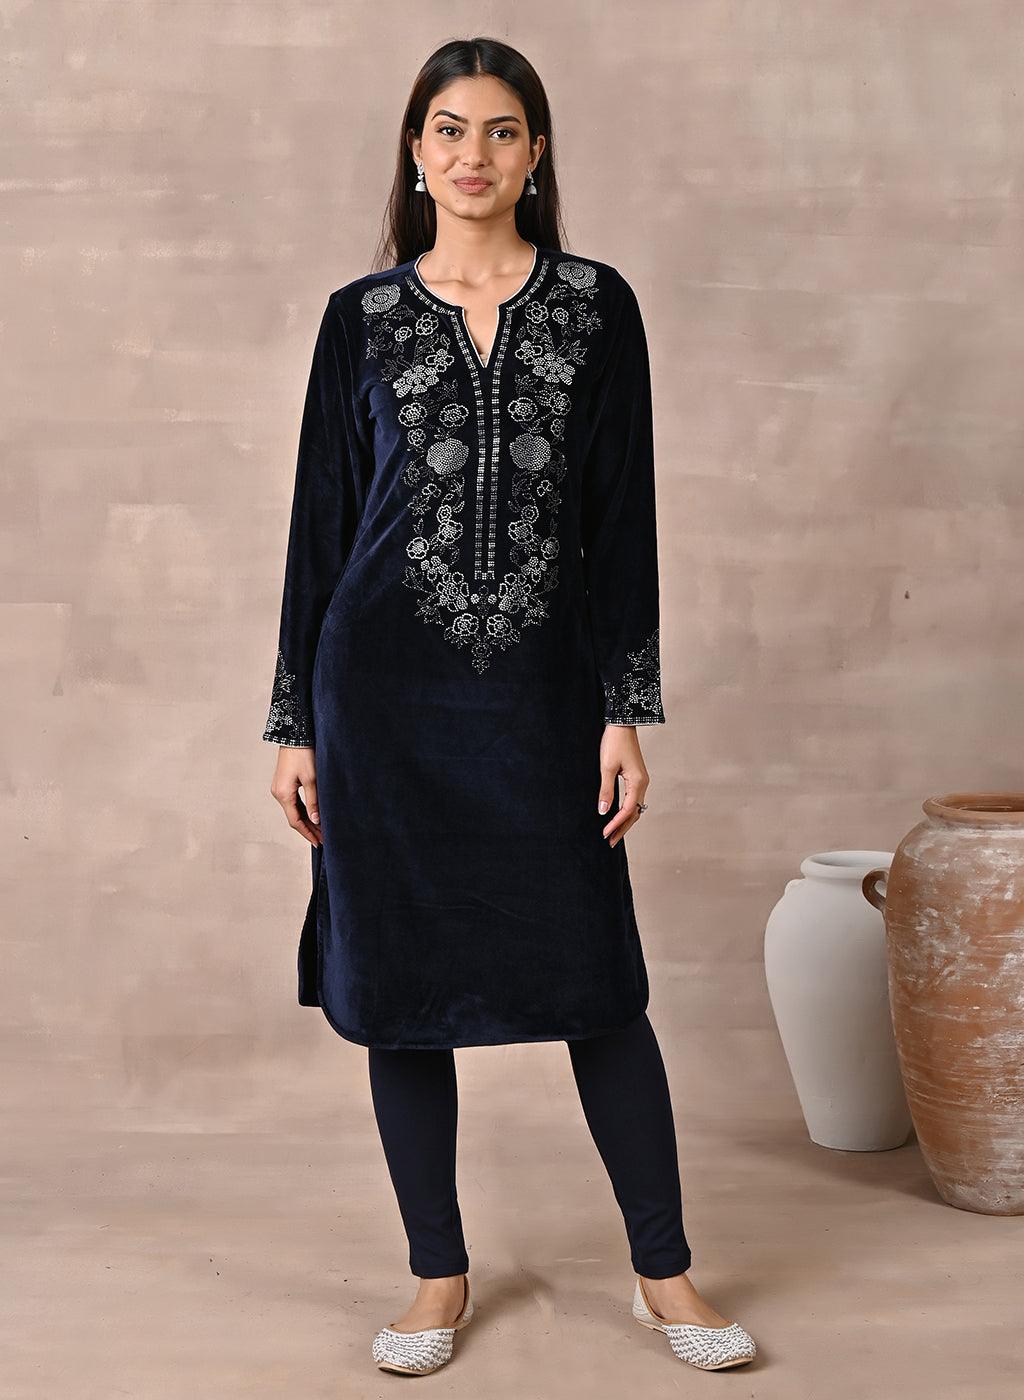 How To Recreate Alia Bhatt's Royal Blue Velvet Suit